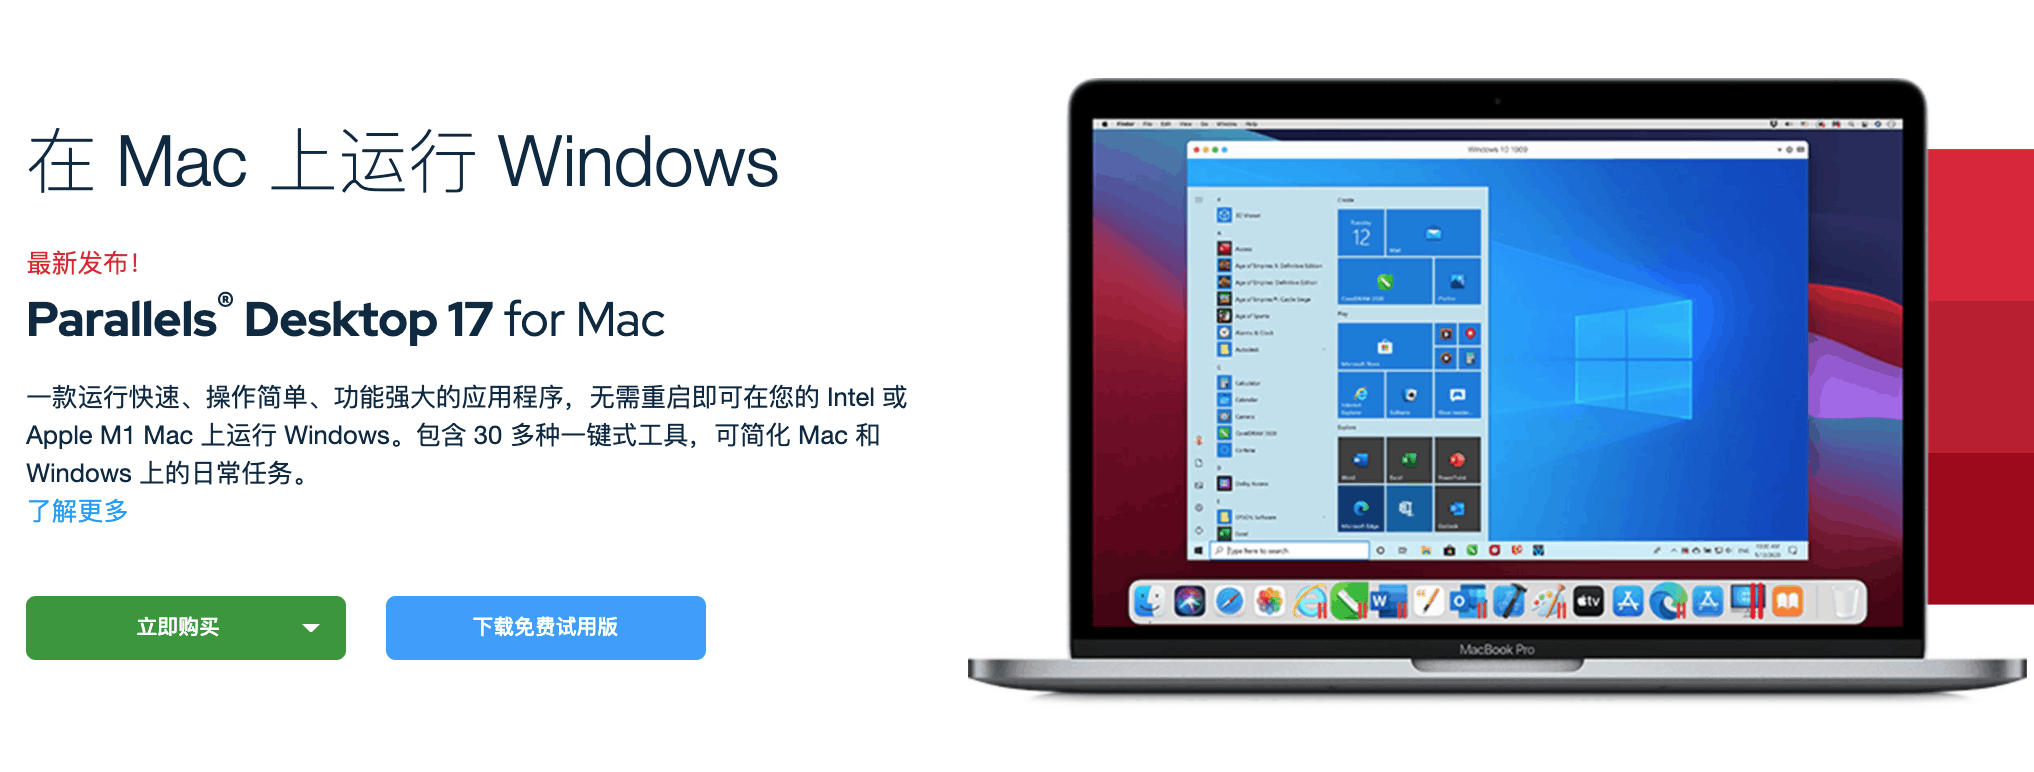 Parallels Desktop 17发布-Parallels 17发布-pd17 支持运行Windows 11系统 M1-Windows 11 和 macOS Montere优化 9折优惠码 Parallels Desktop 17 for mac